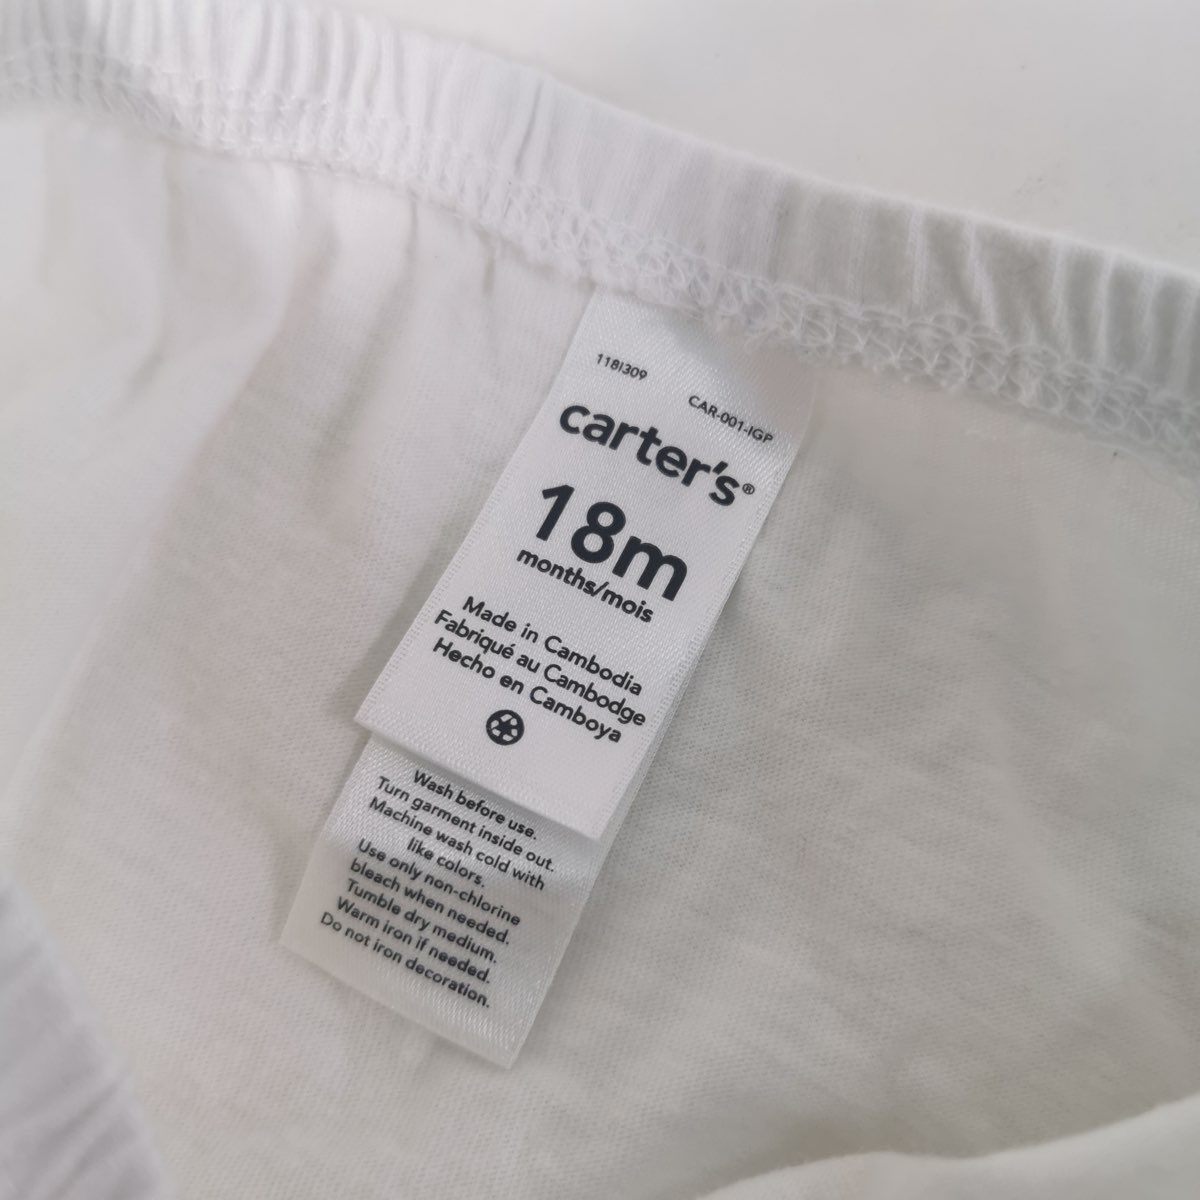 carter's ชุดเดรส  สีขาว ลายผีเสื้อ size 18m